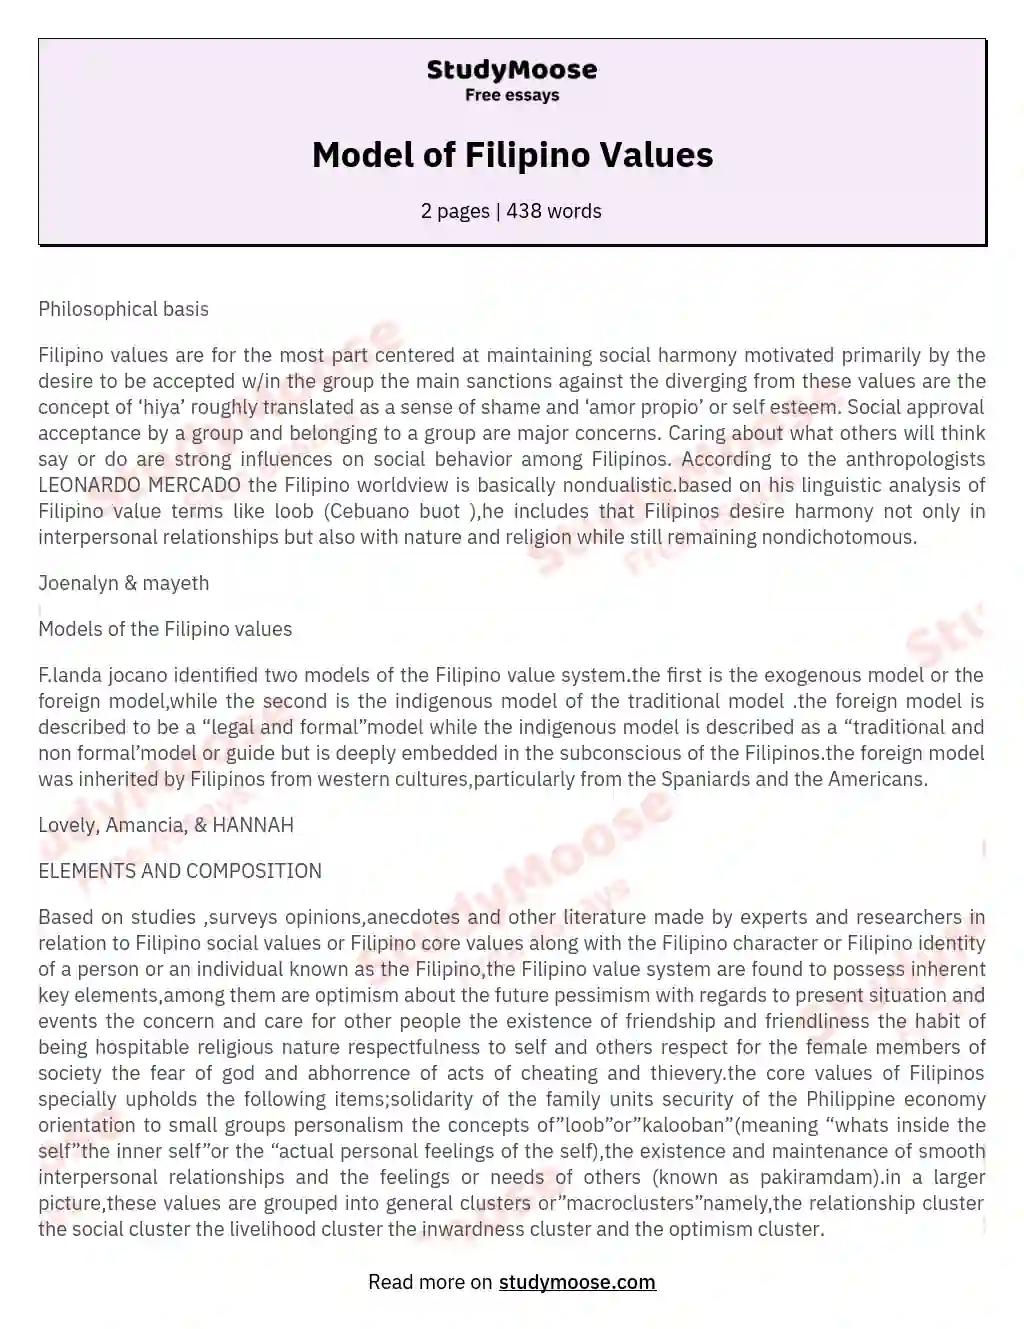 Model of Filipino Values